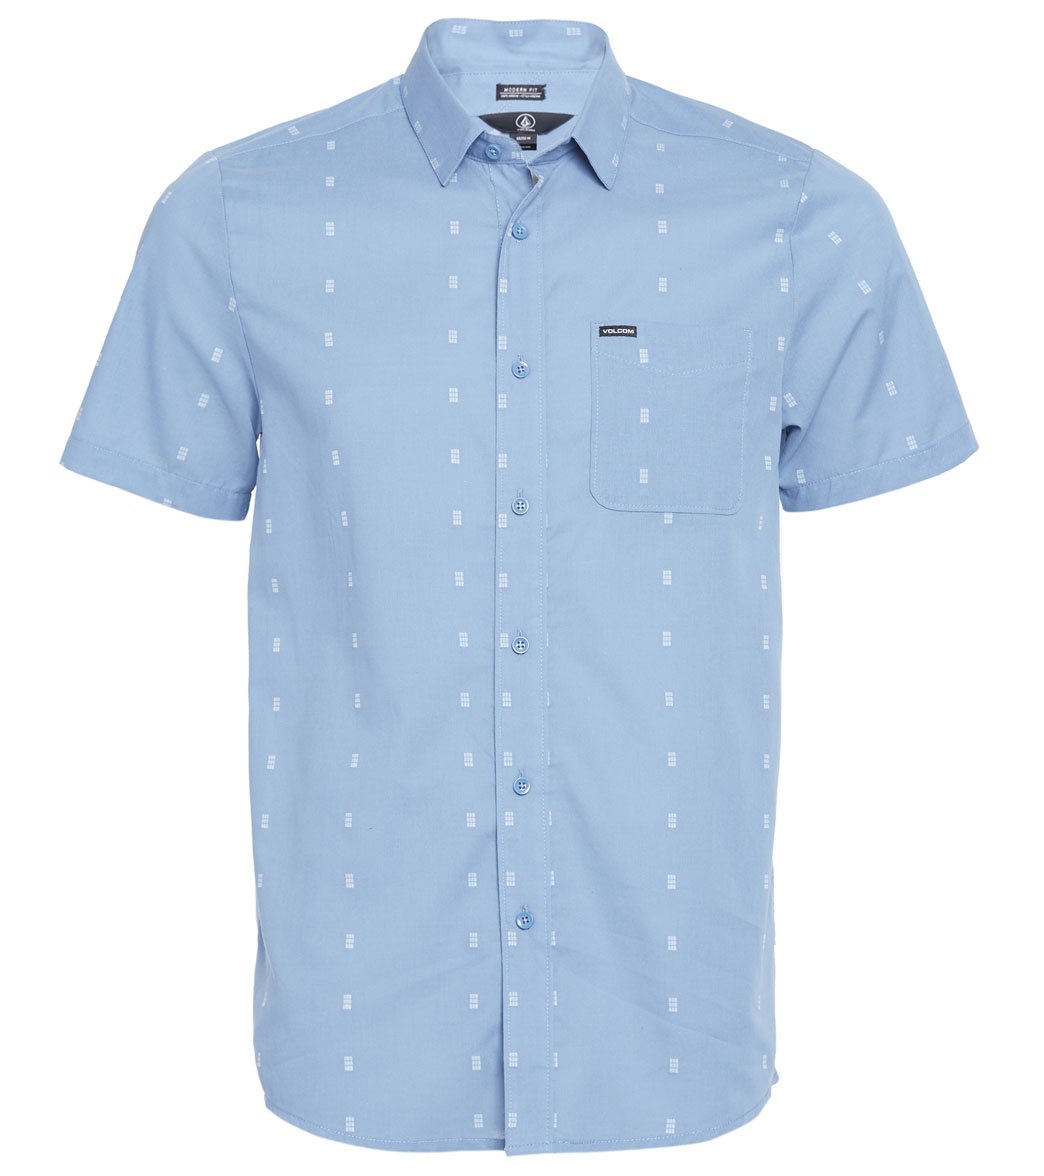 Volcom Newmark Short Sleeve Shirt - Flight Blue Small Cotton - Swimoutlet.com